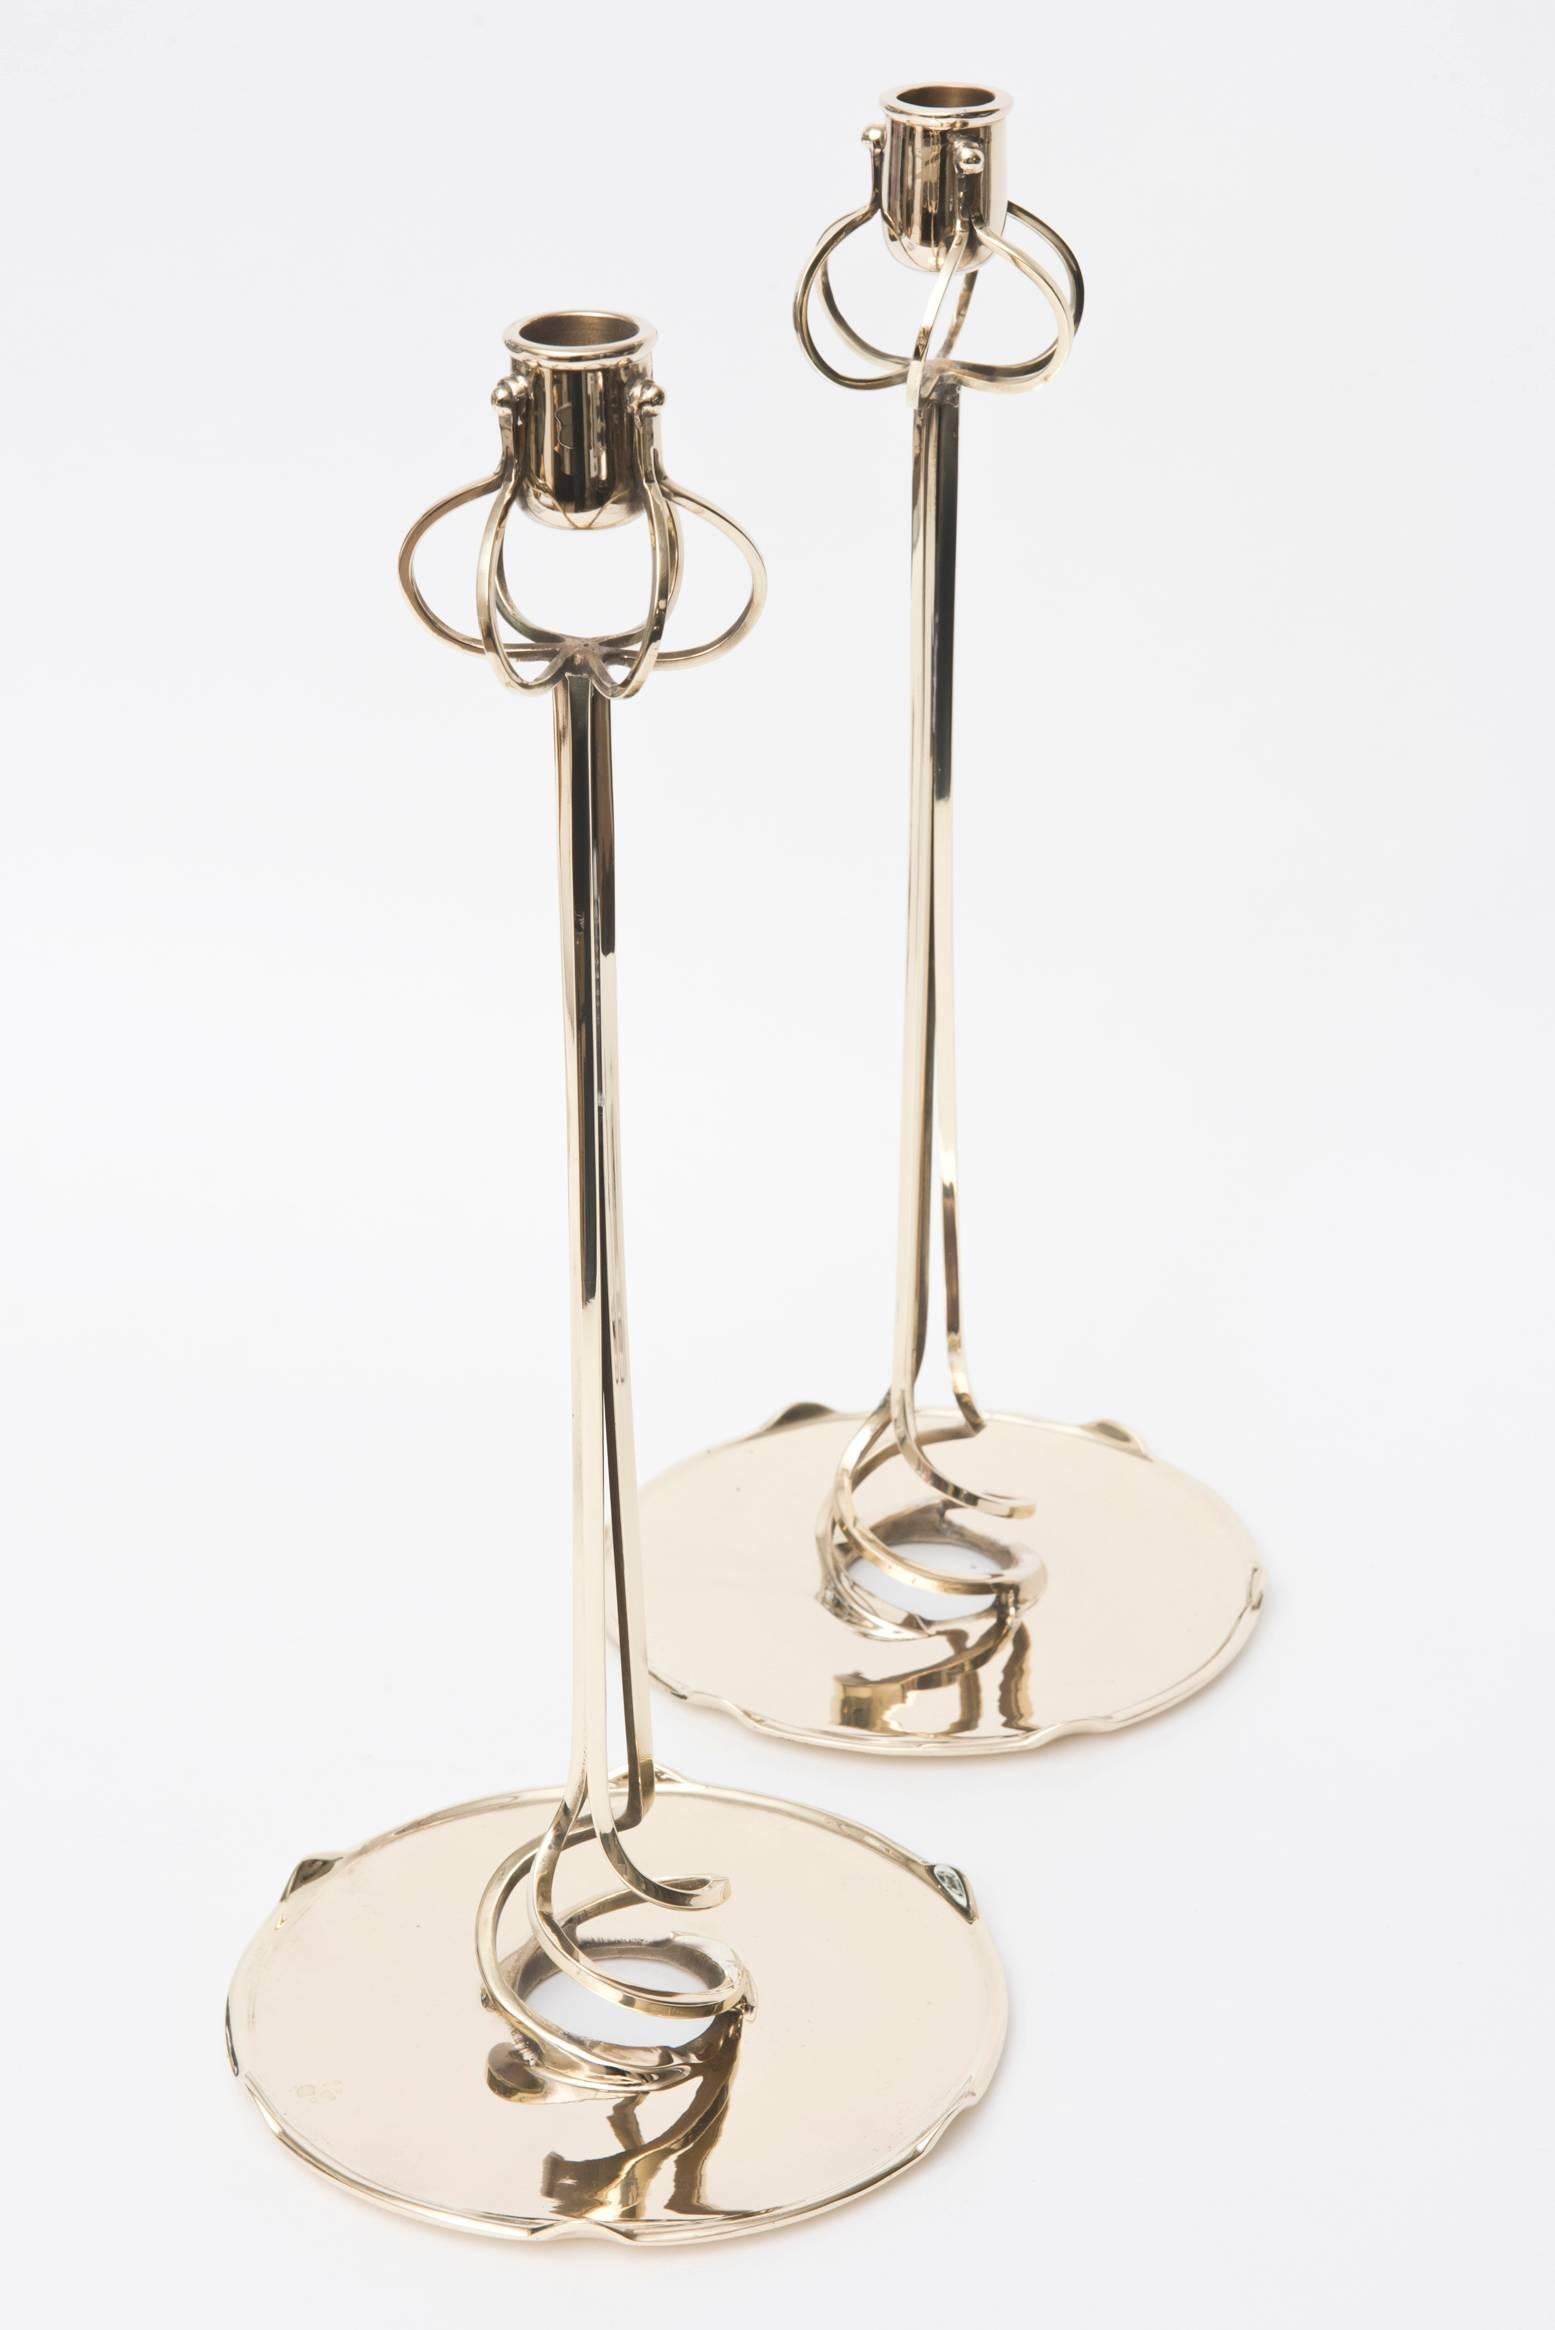 Pair of Rare Friedrich Adler Art Nouveau Polished Brass Candlesticks 1